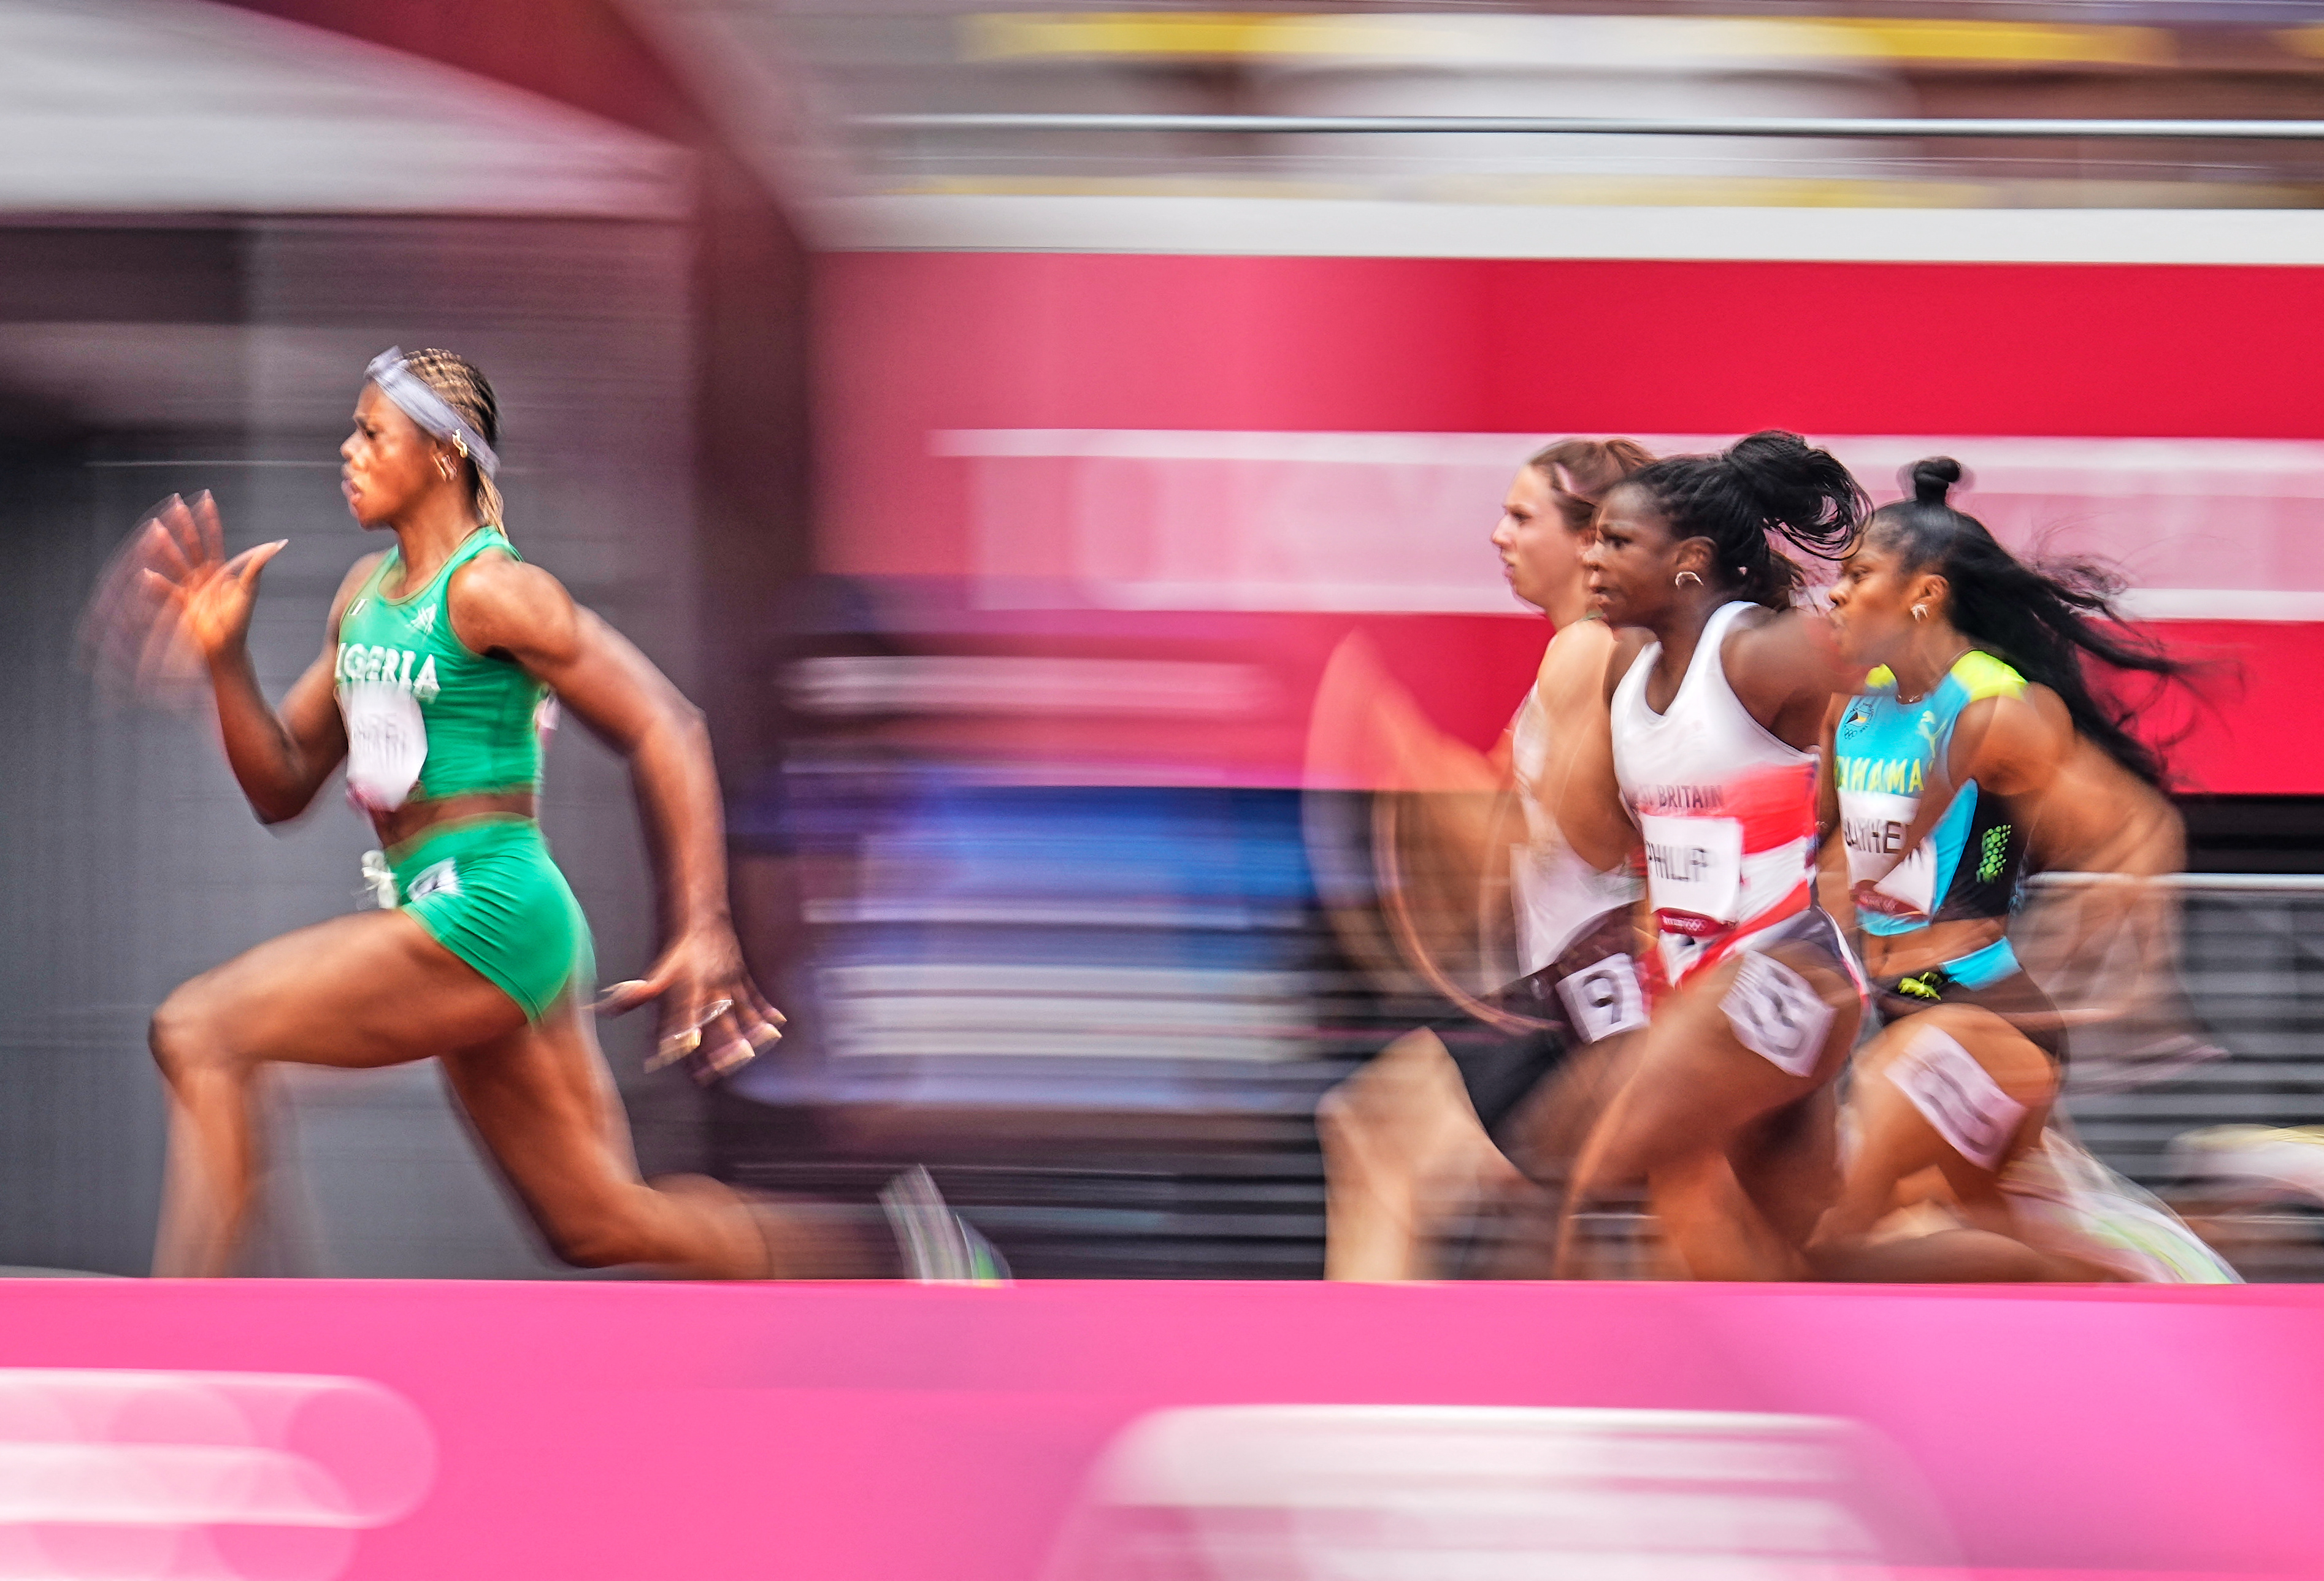 A 100 méteres síkfutásban döntőesélyes nigériai Blessing Okagbarénak pozitív lett a doppingtesztje a tokiói olimpián. Rajta kívül a sprinter kenyai Mark Otieno és a grúz súlylökő, Benik Abramjan bukott le tiltott szteroidok miatt.